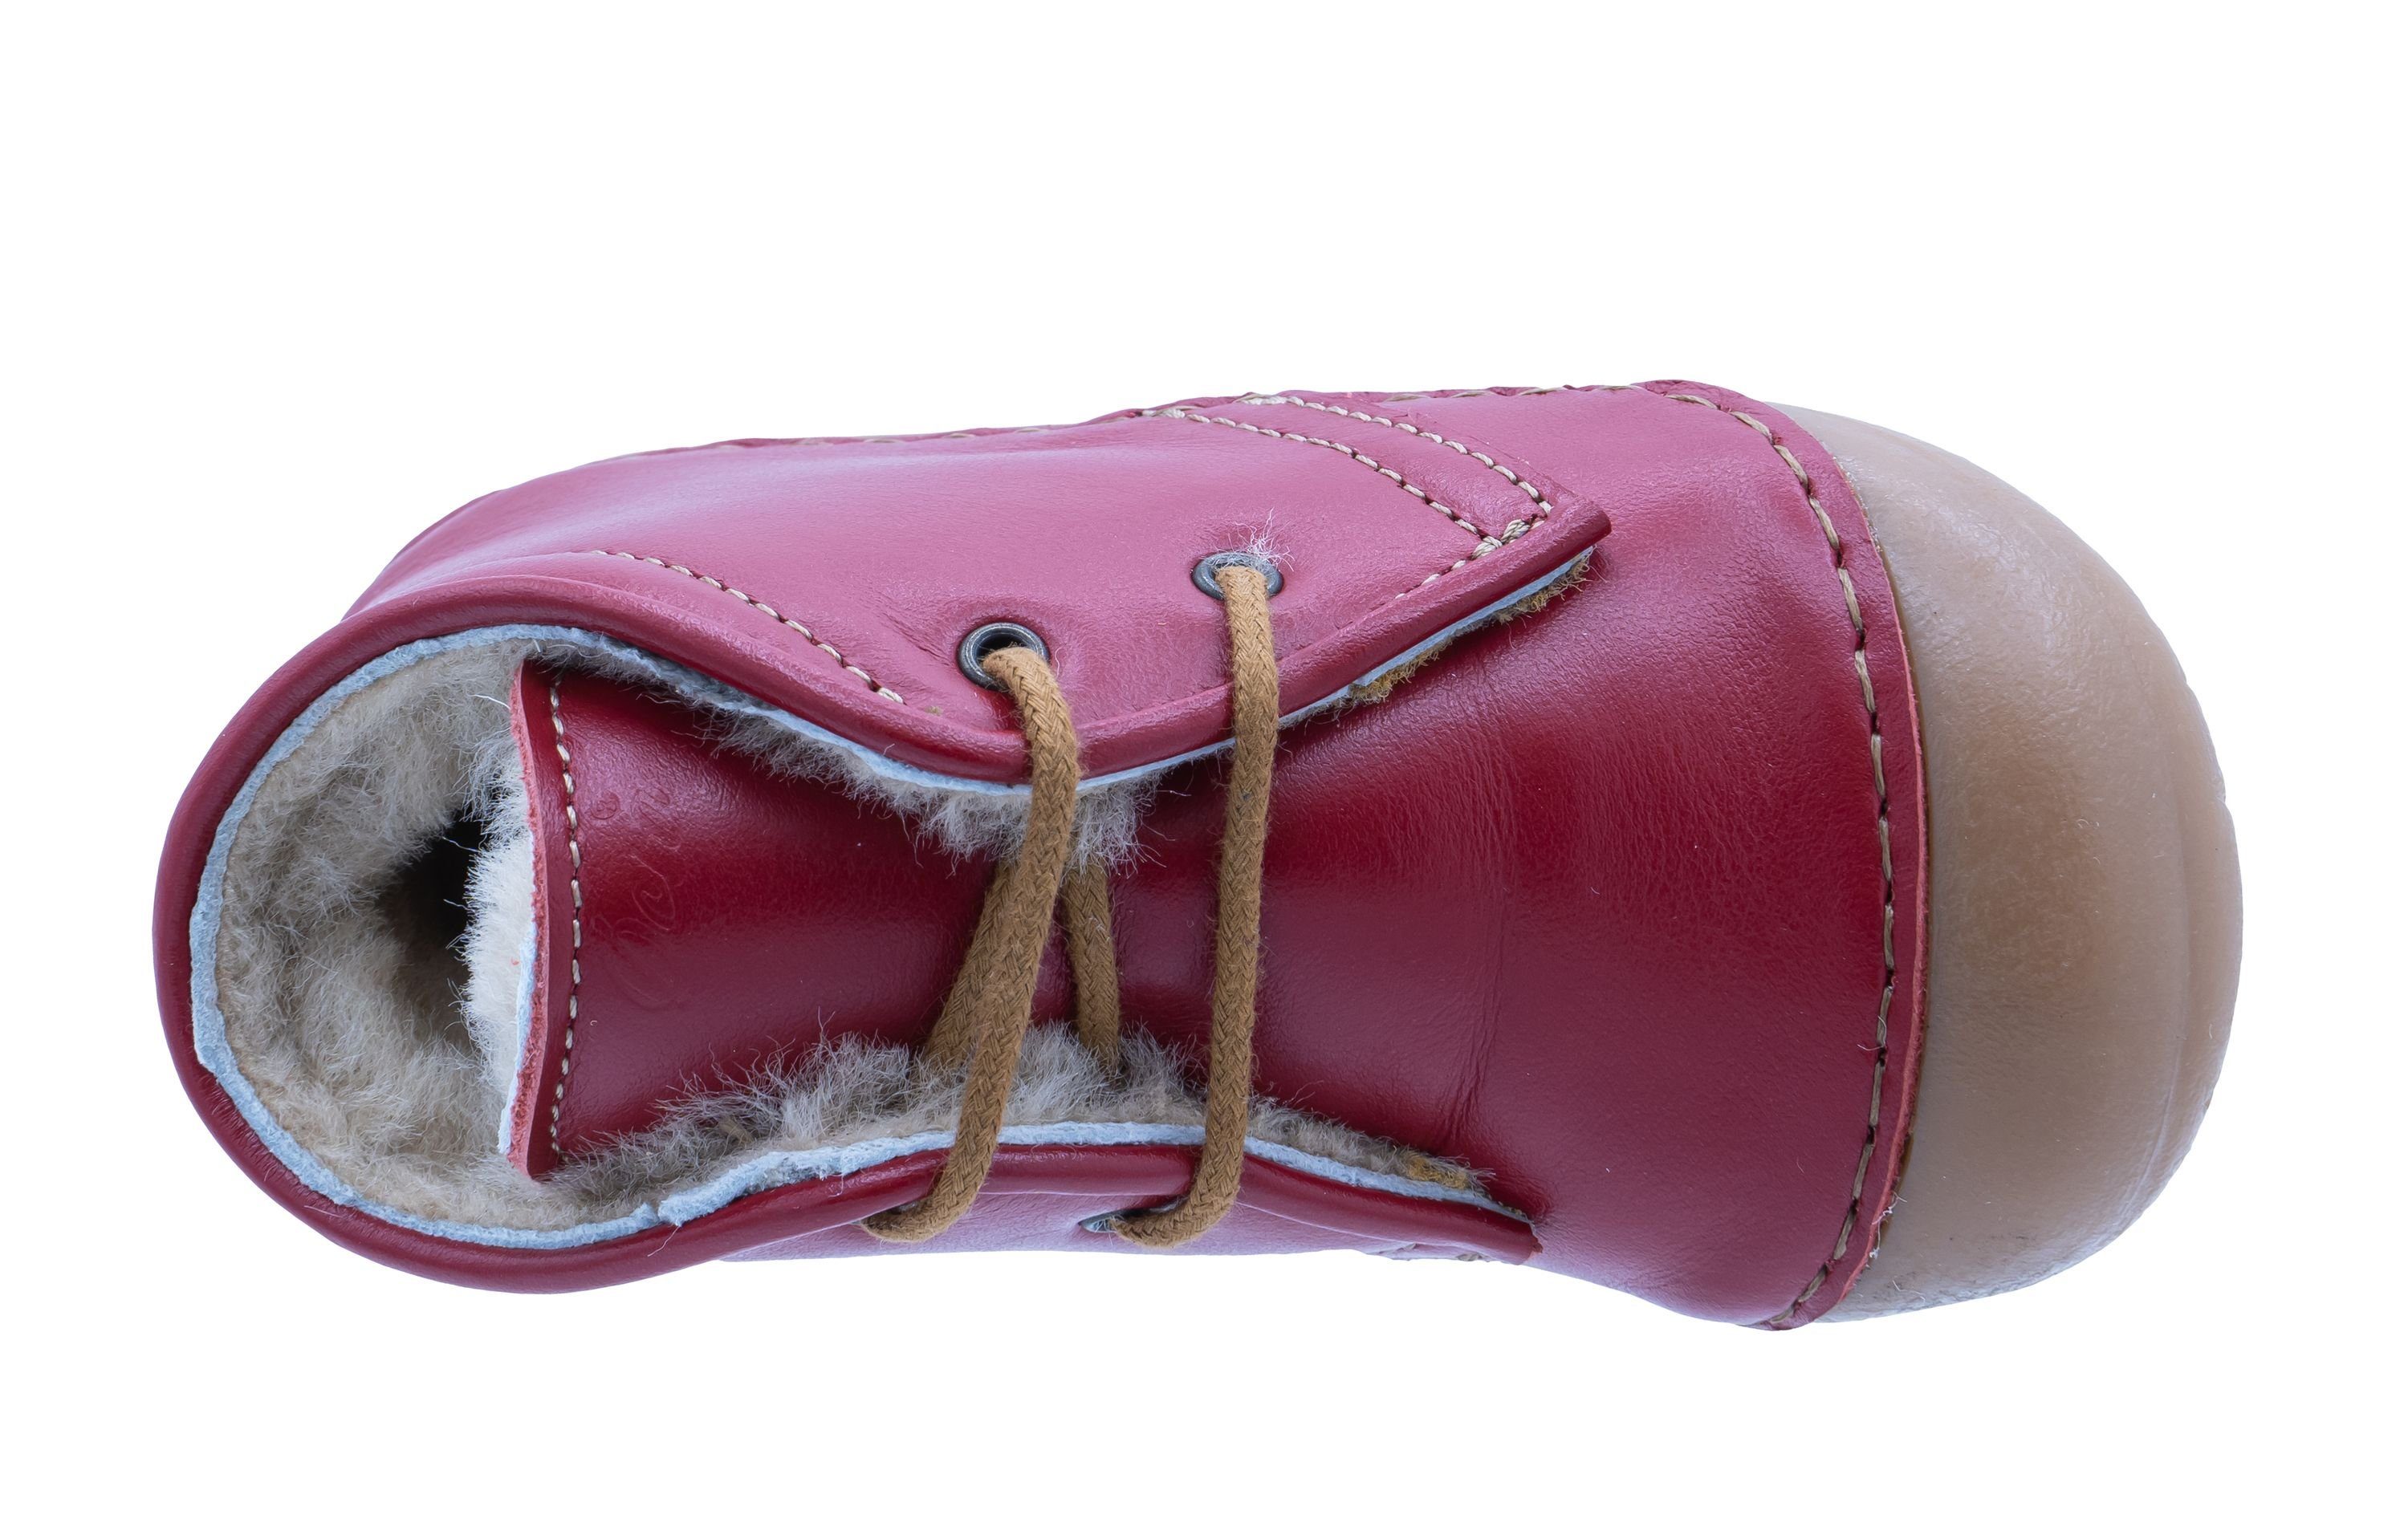 Ocra Ocra Schuhe Lauflernschuhe mit geg. Schnürstiefelette pflanz. A330 Lammfell rot